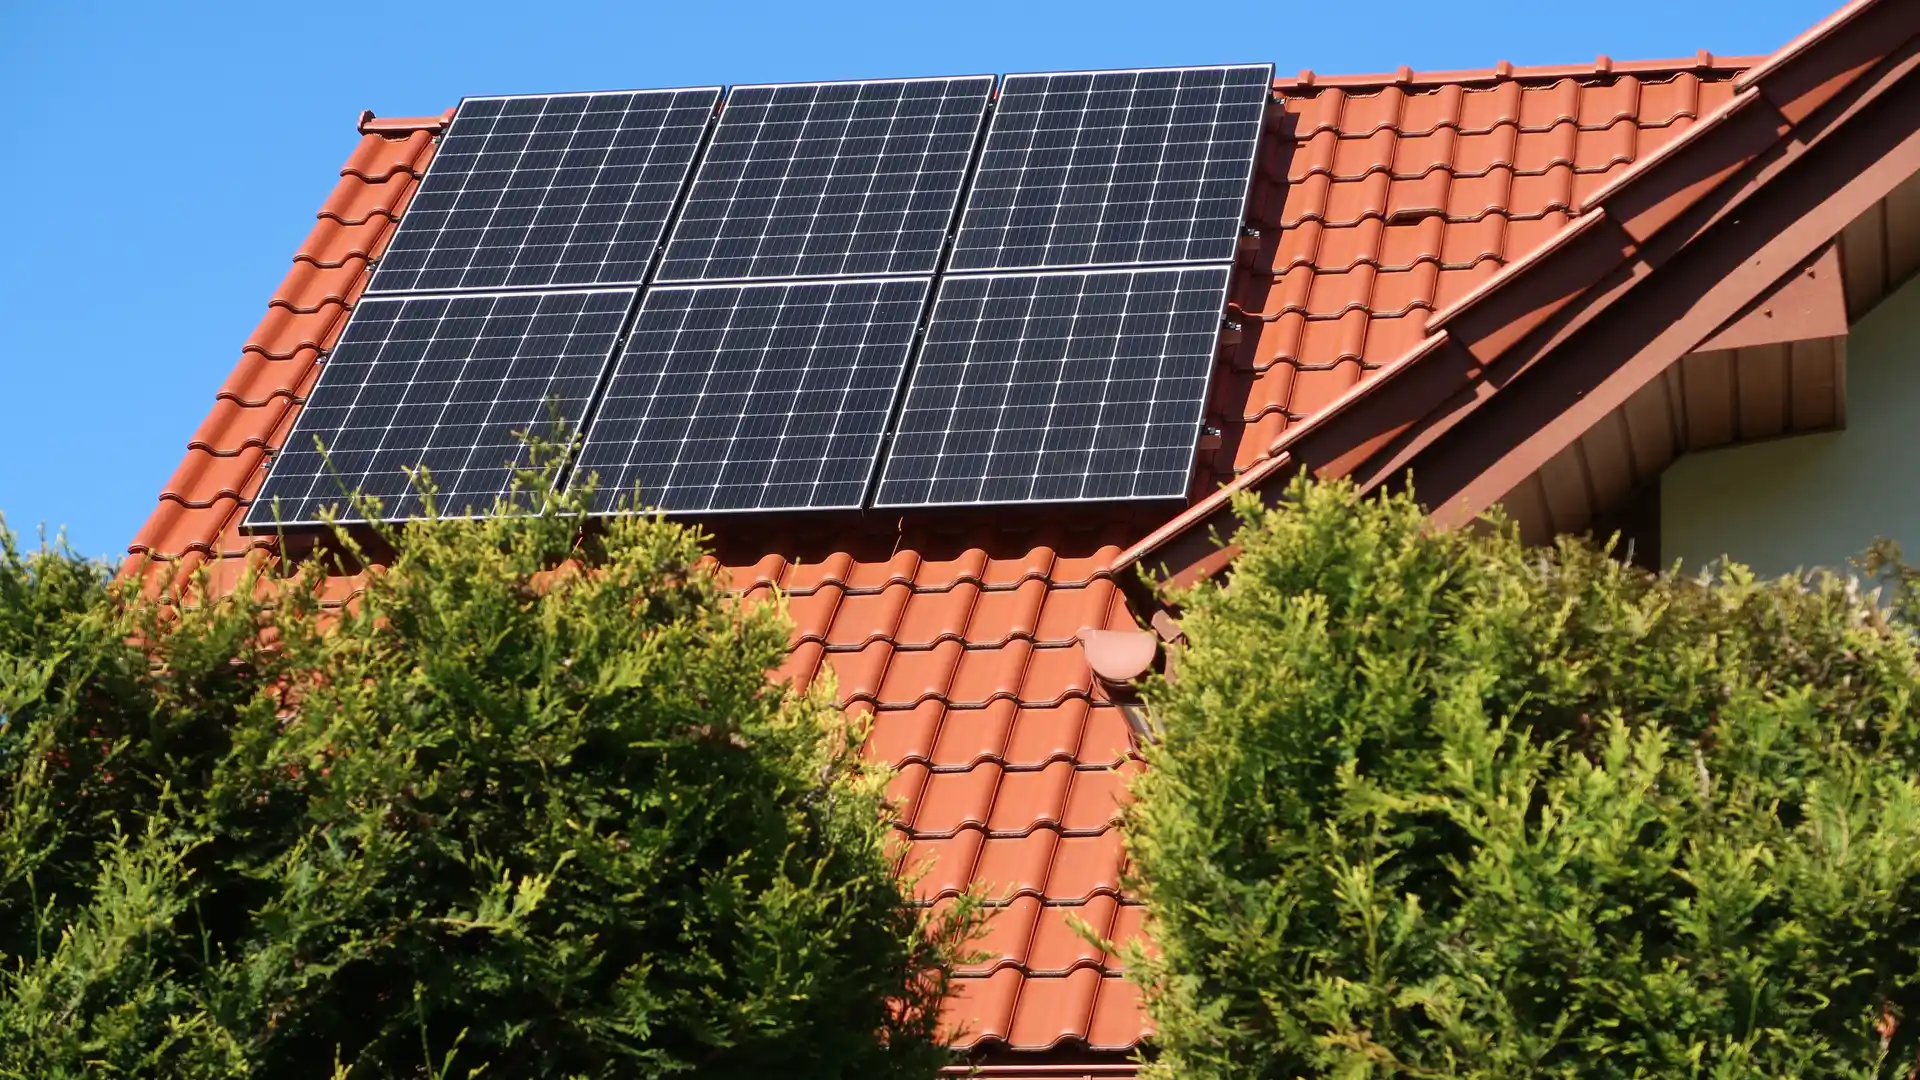 Tejado de una casa con placas solares para representar la energia solar de factor energia